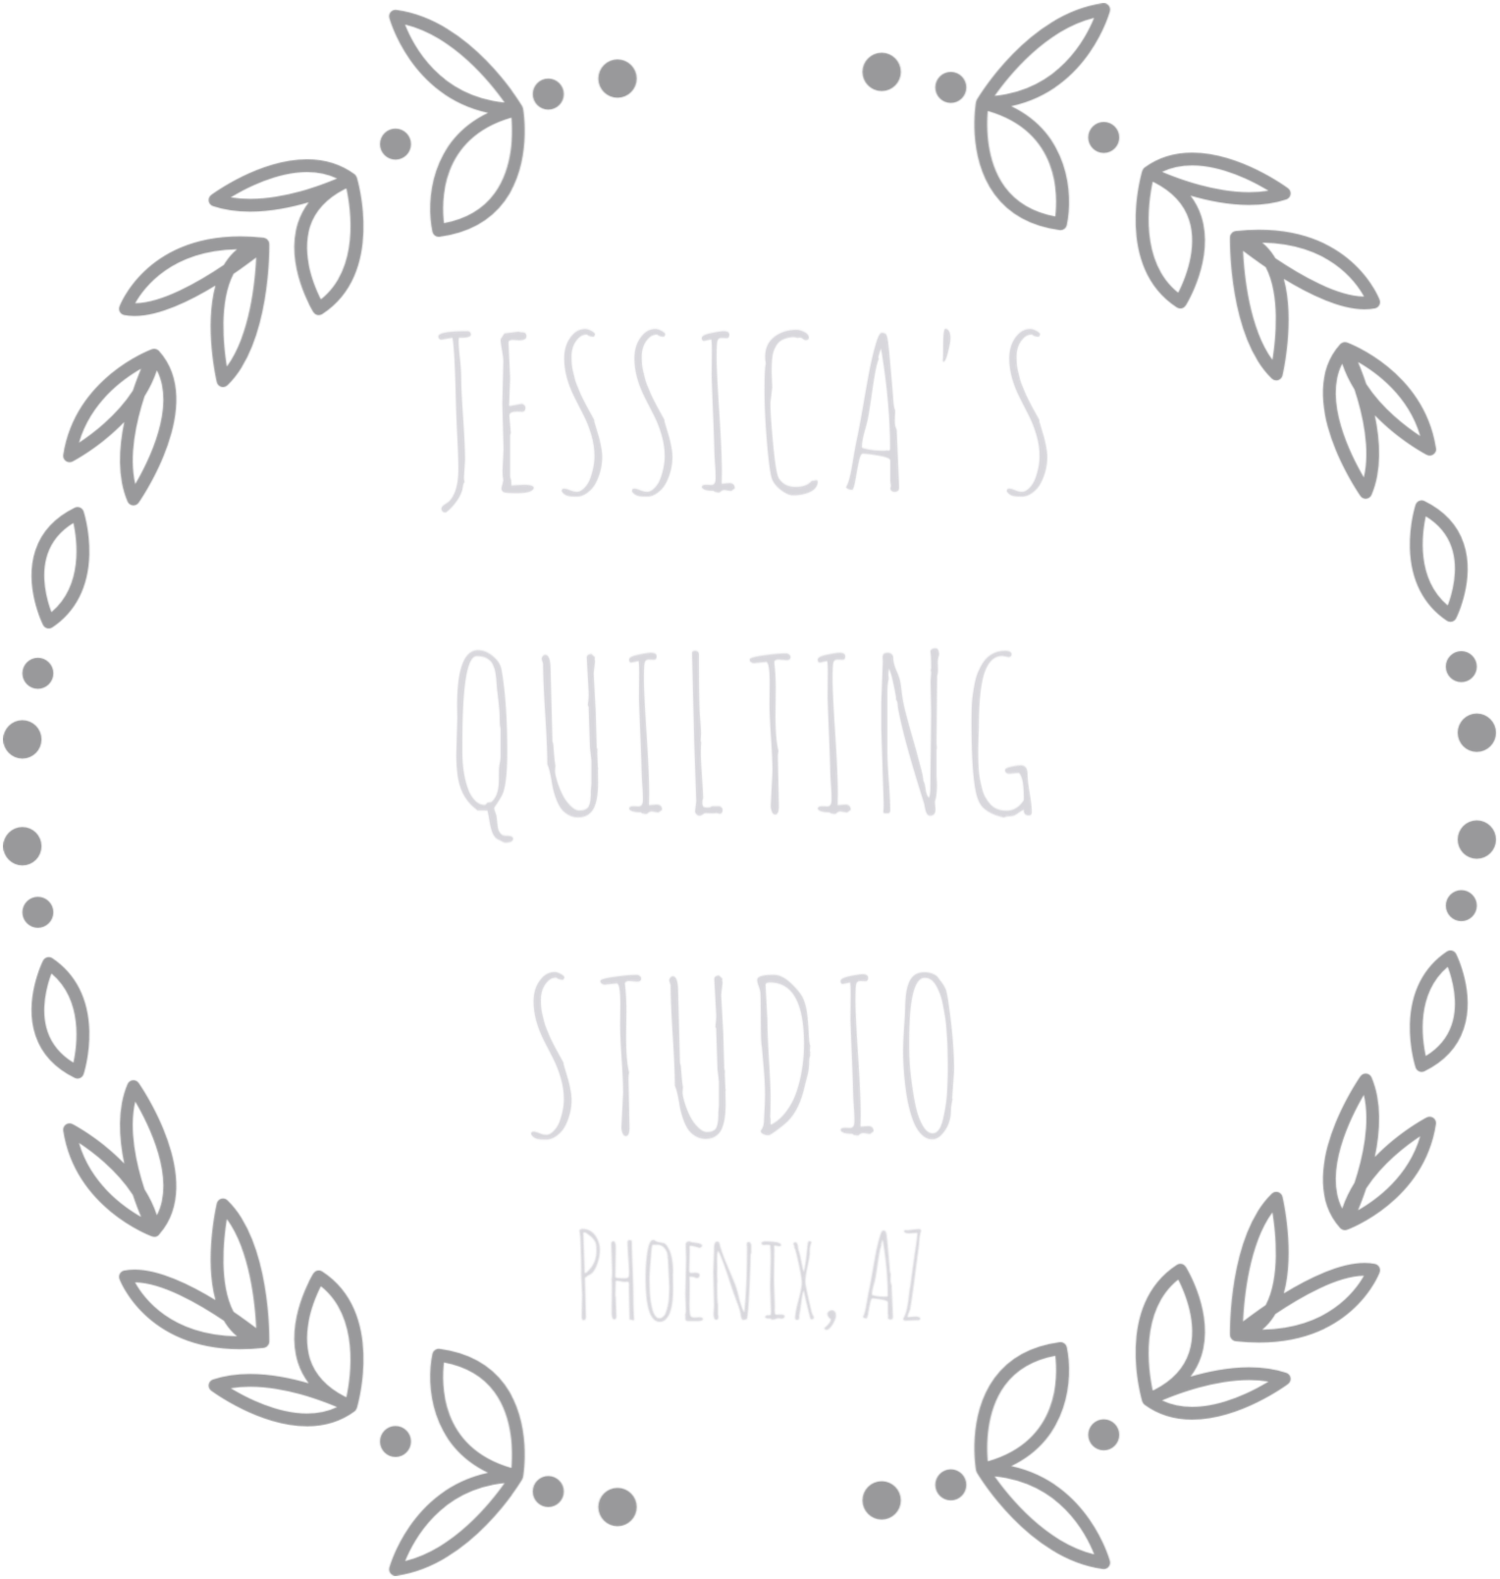 Jessica's Quilting Studio